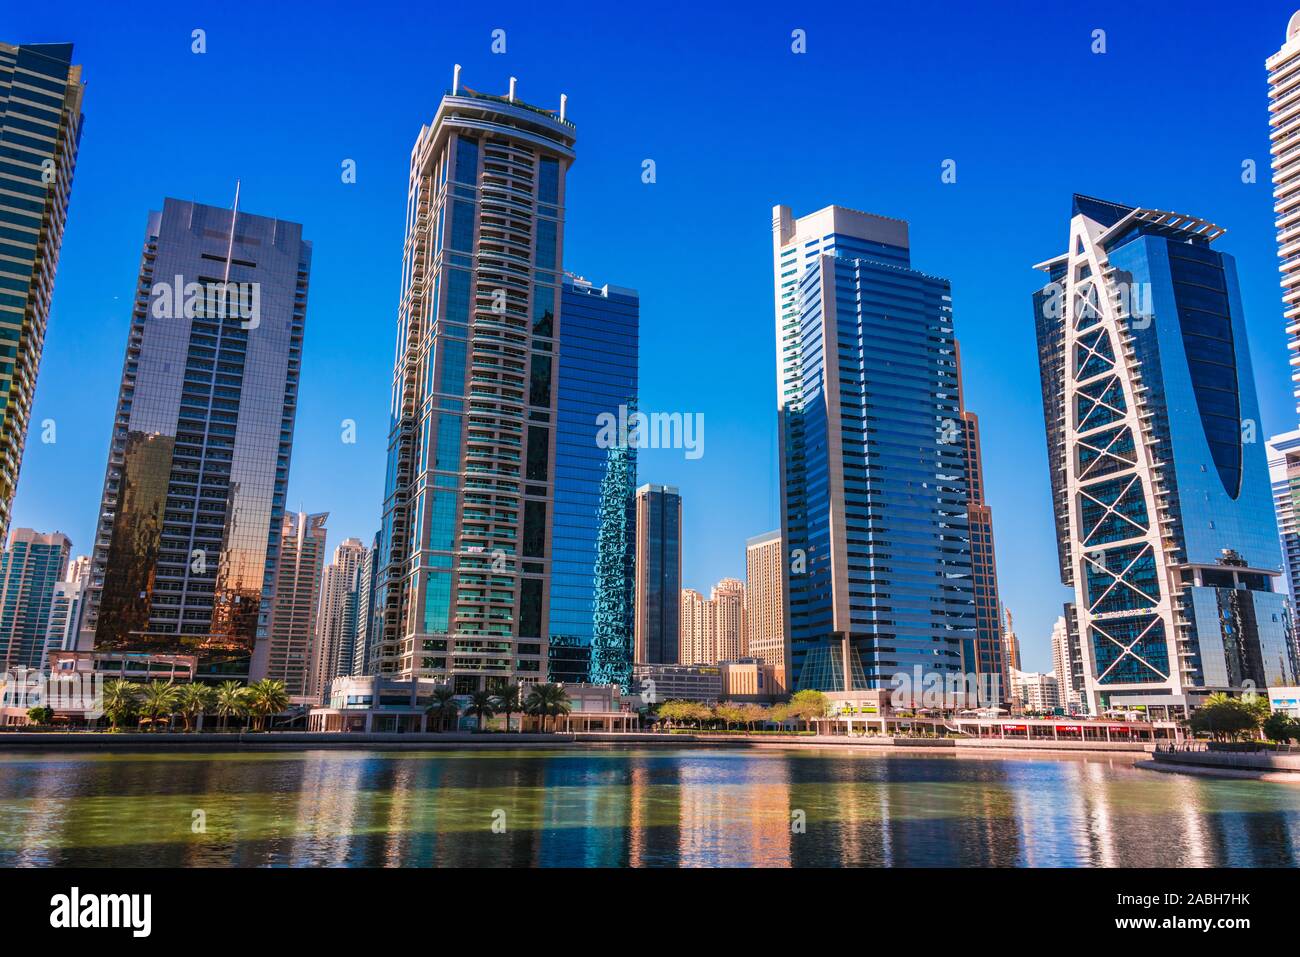 DUBAI, Emirati Arabi Uniti - Febbraio 7, 2019: moderna architettura residenziale di Jumeirah Lakes Towers a Dubai, Emirati Arabi Uniti Foto Stock